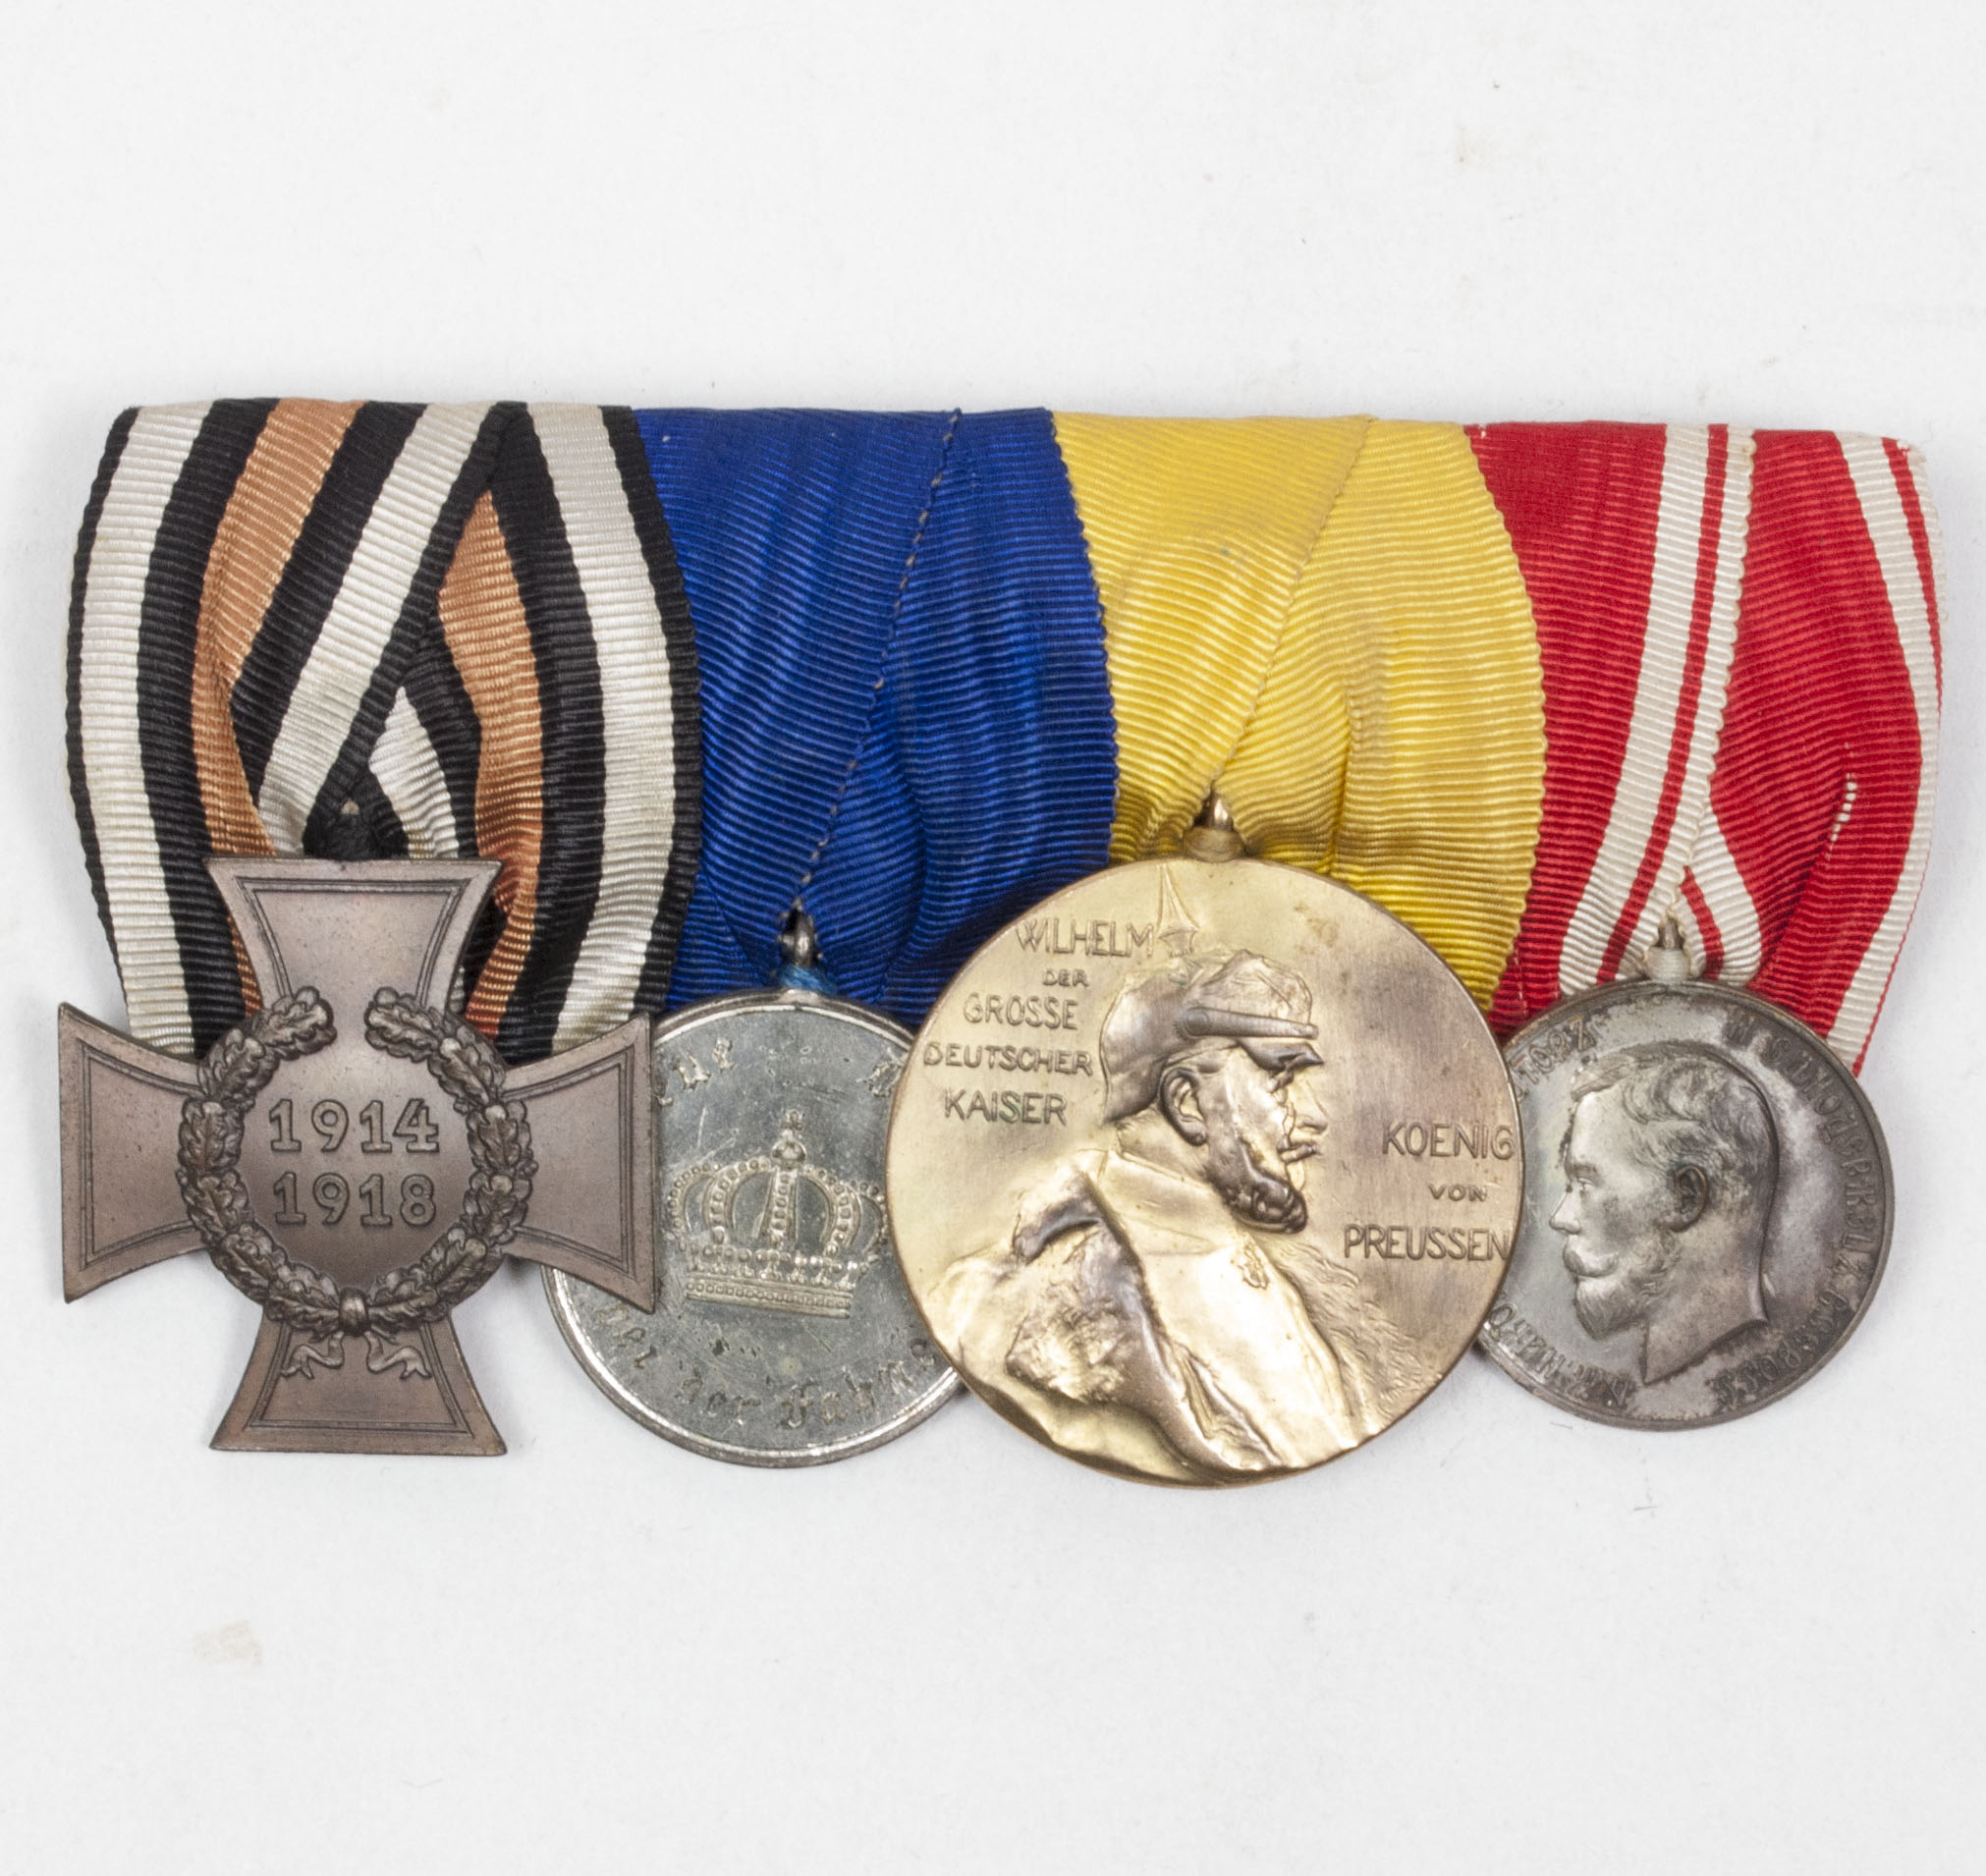 German medalbar with FEK, Treue Dienst medal, Zentenarenmedaille 1897, Imperial Russian Silver Medal For Zeal (Tsar Nicholas II)